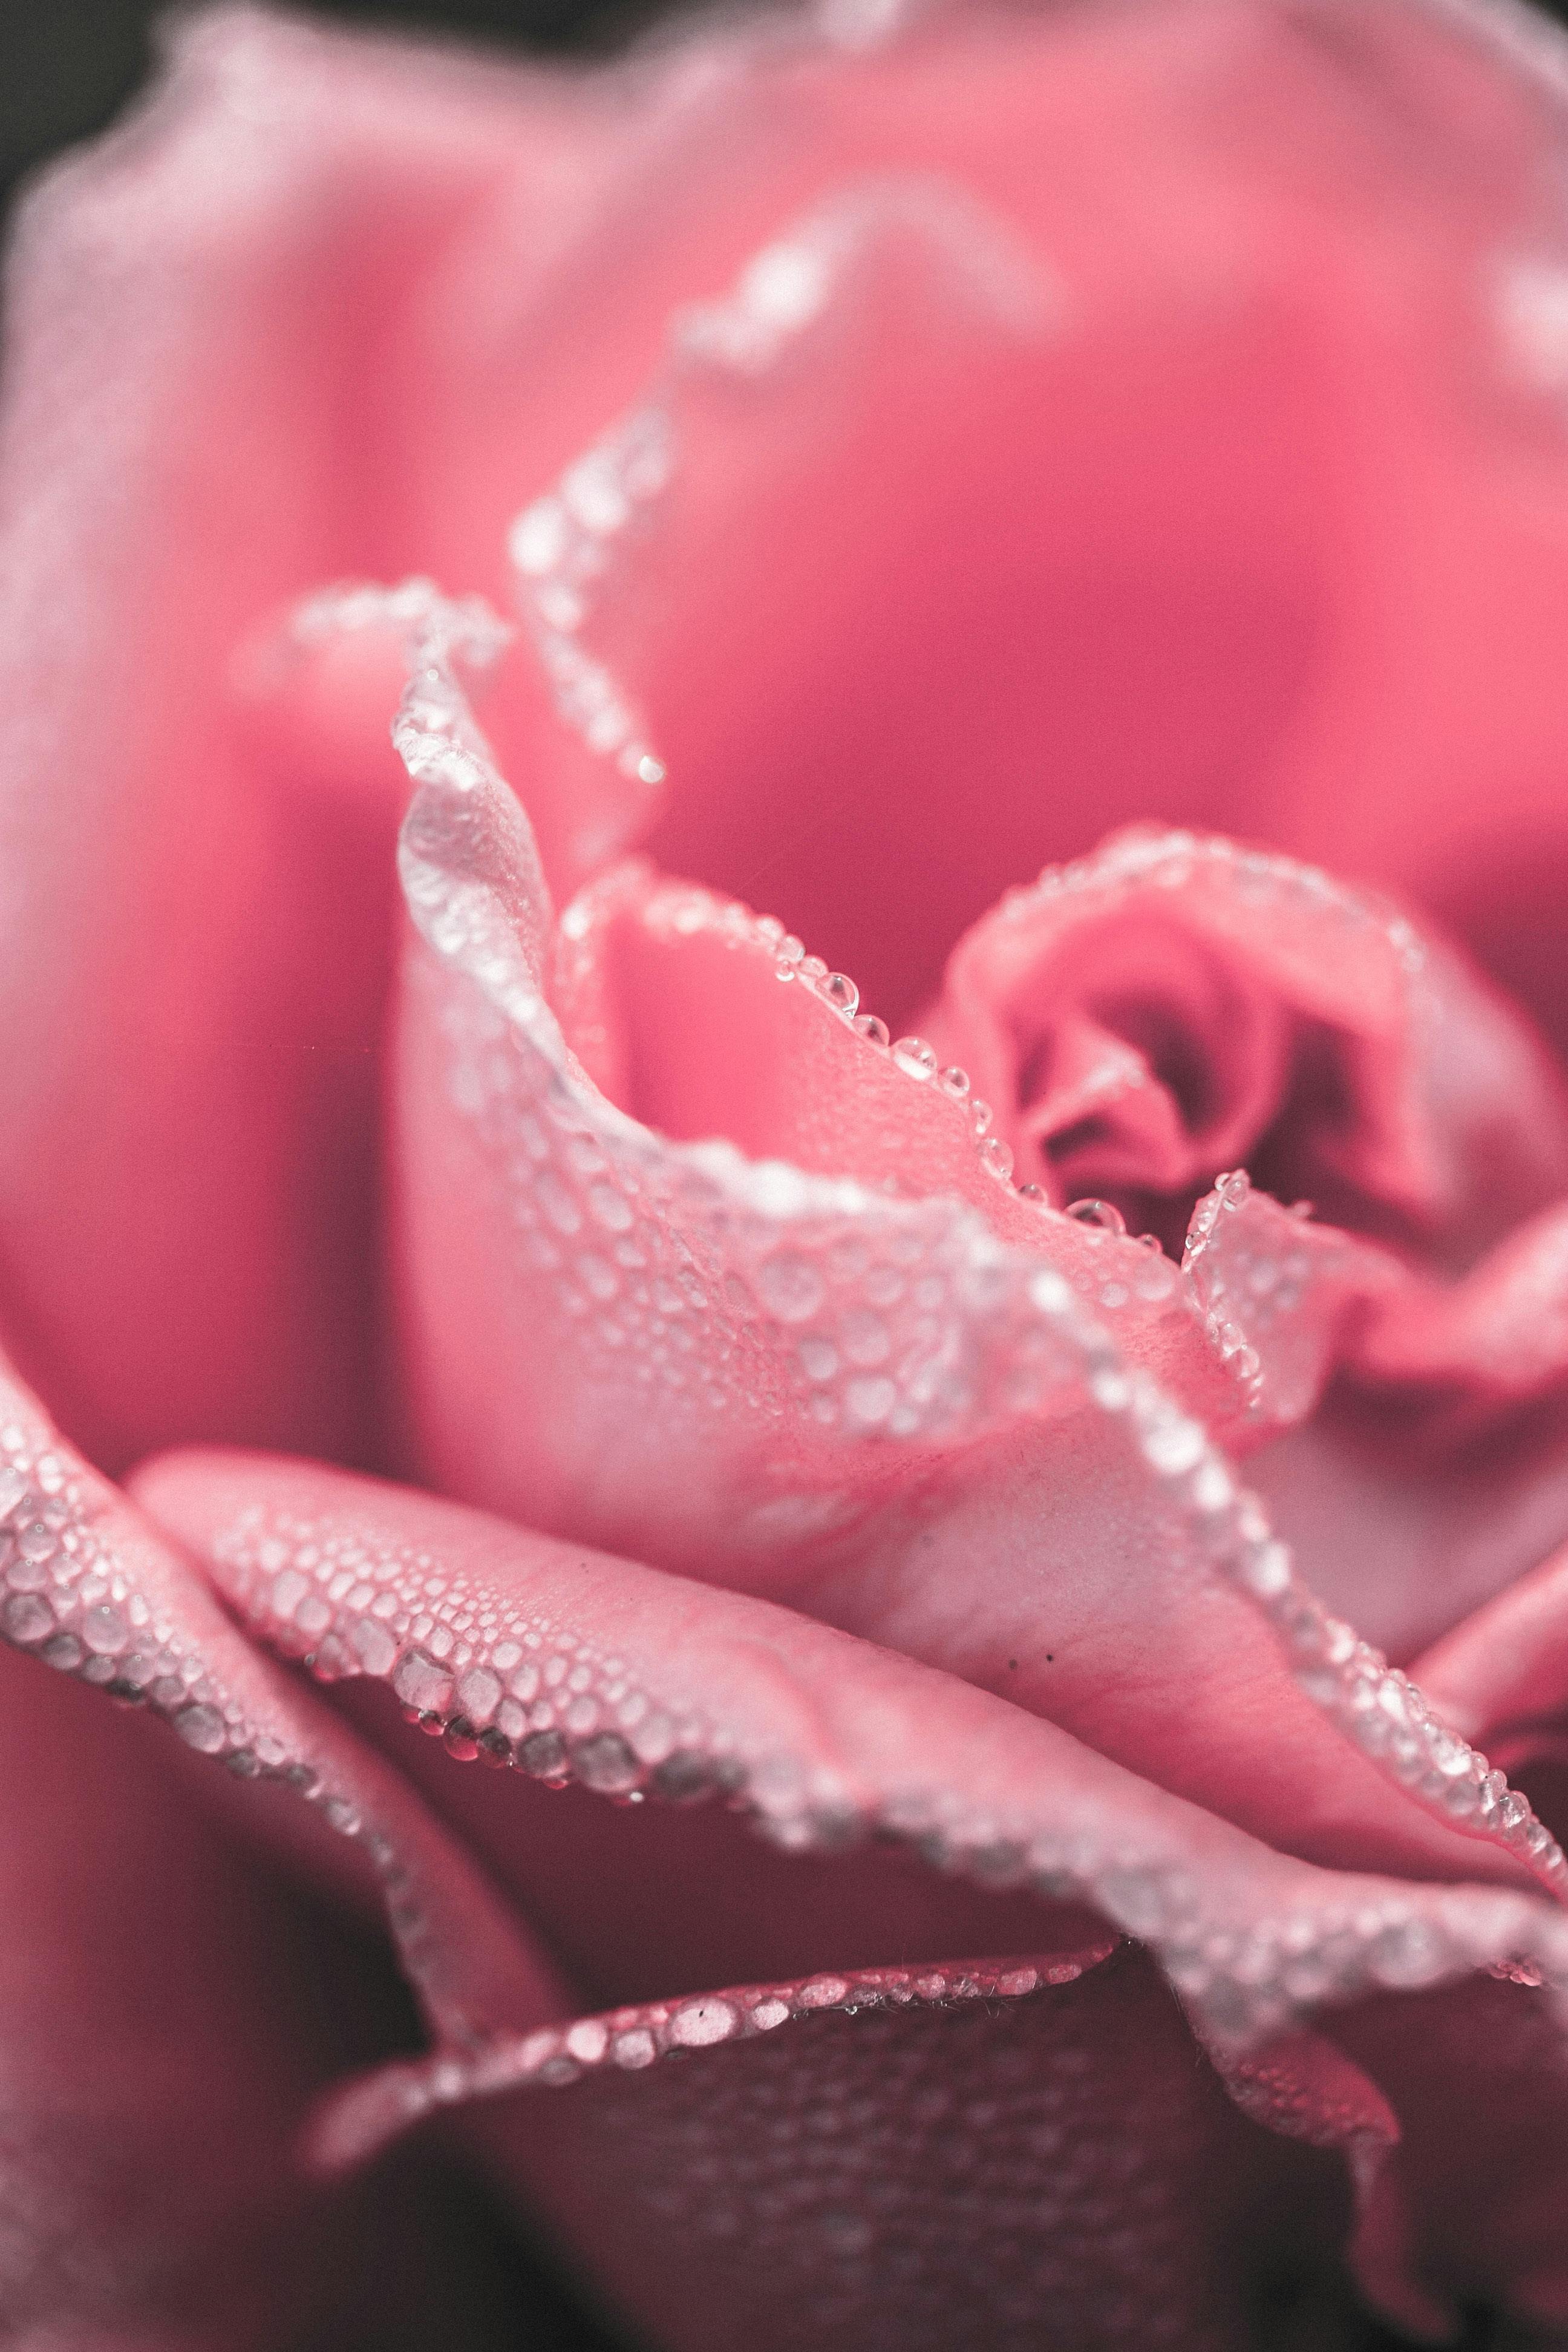 Trái tim bạn sẽ trỗi dậy với bức tranh hình hoa hồng hồng chụp cận cảnh này! Màu sắc tươi sáng và chi tiết tuyệt vời giúp bạn tận hưởng sự tươi mới và tình cảm đầy đủ của hoa hồng. Hãy xem ngay để cảm nhận được sự đẹp và quyến rũ của chúng.